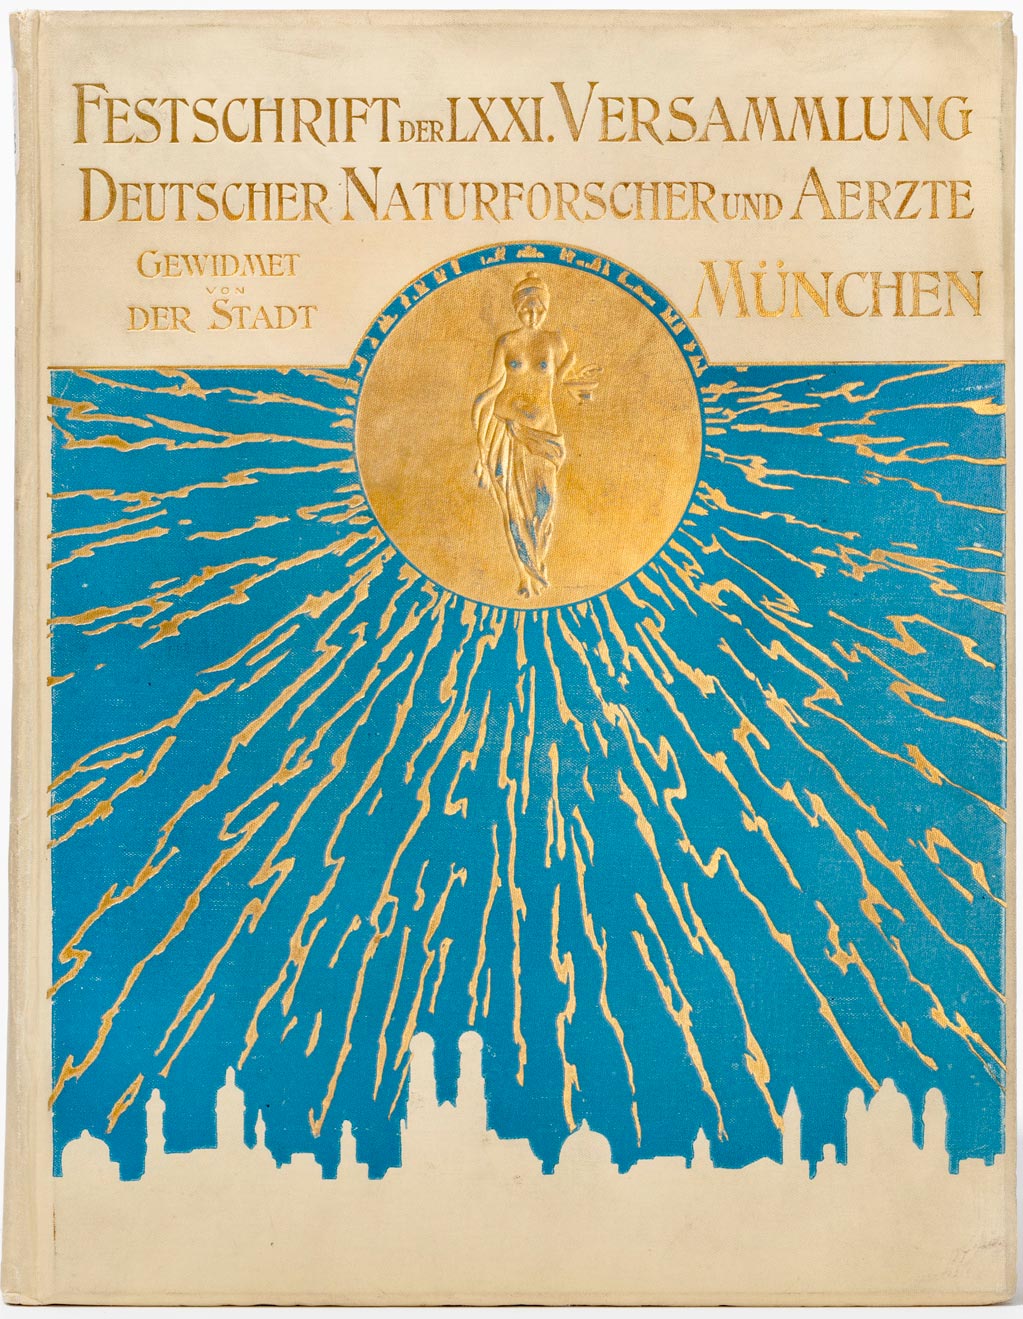 Festschrift, 71. Versammlung, München, 1899 © GDNÄ